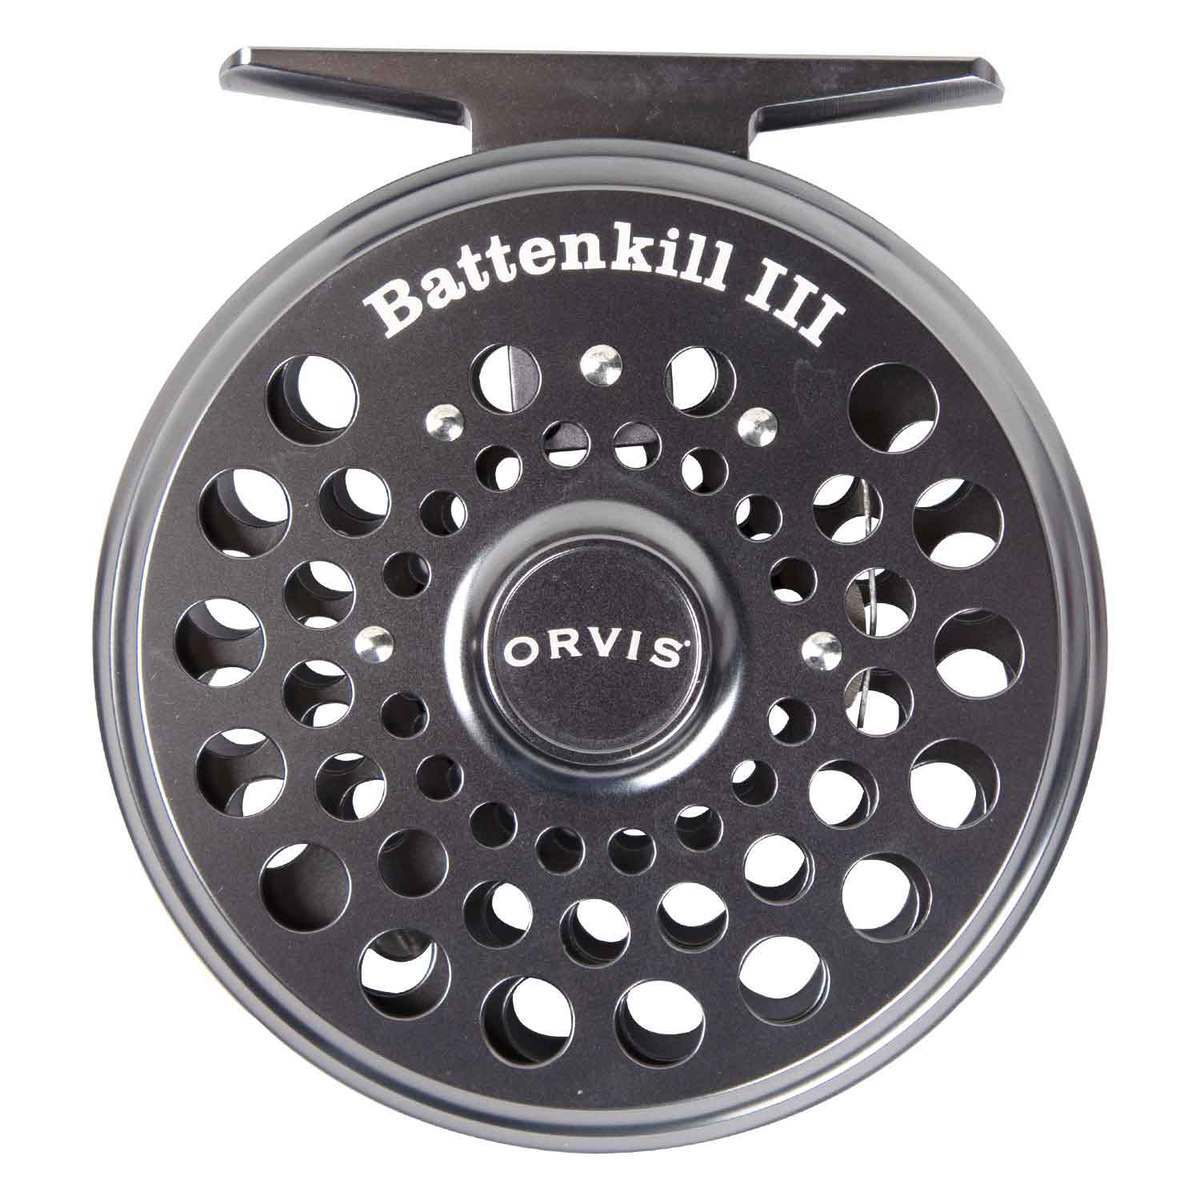 Orvis Battenkill Fly Fishing Reel III - 5-7wt, Black Nickel | Sportsman ...